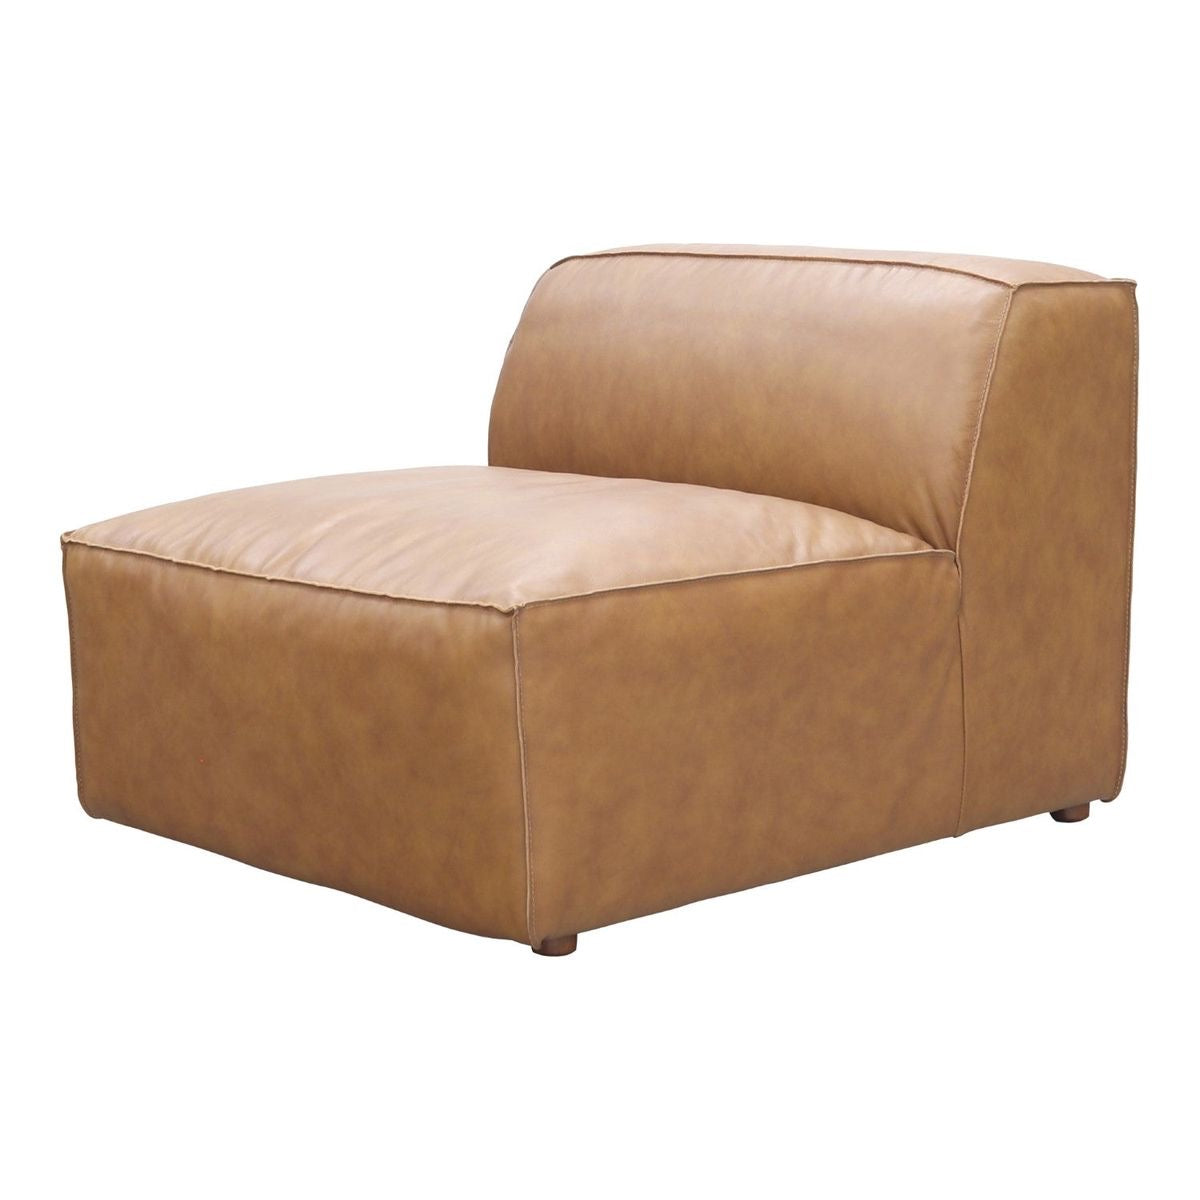 Sectional Modular Sofa